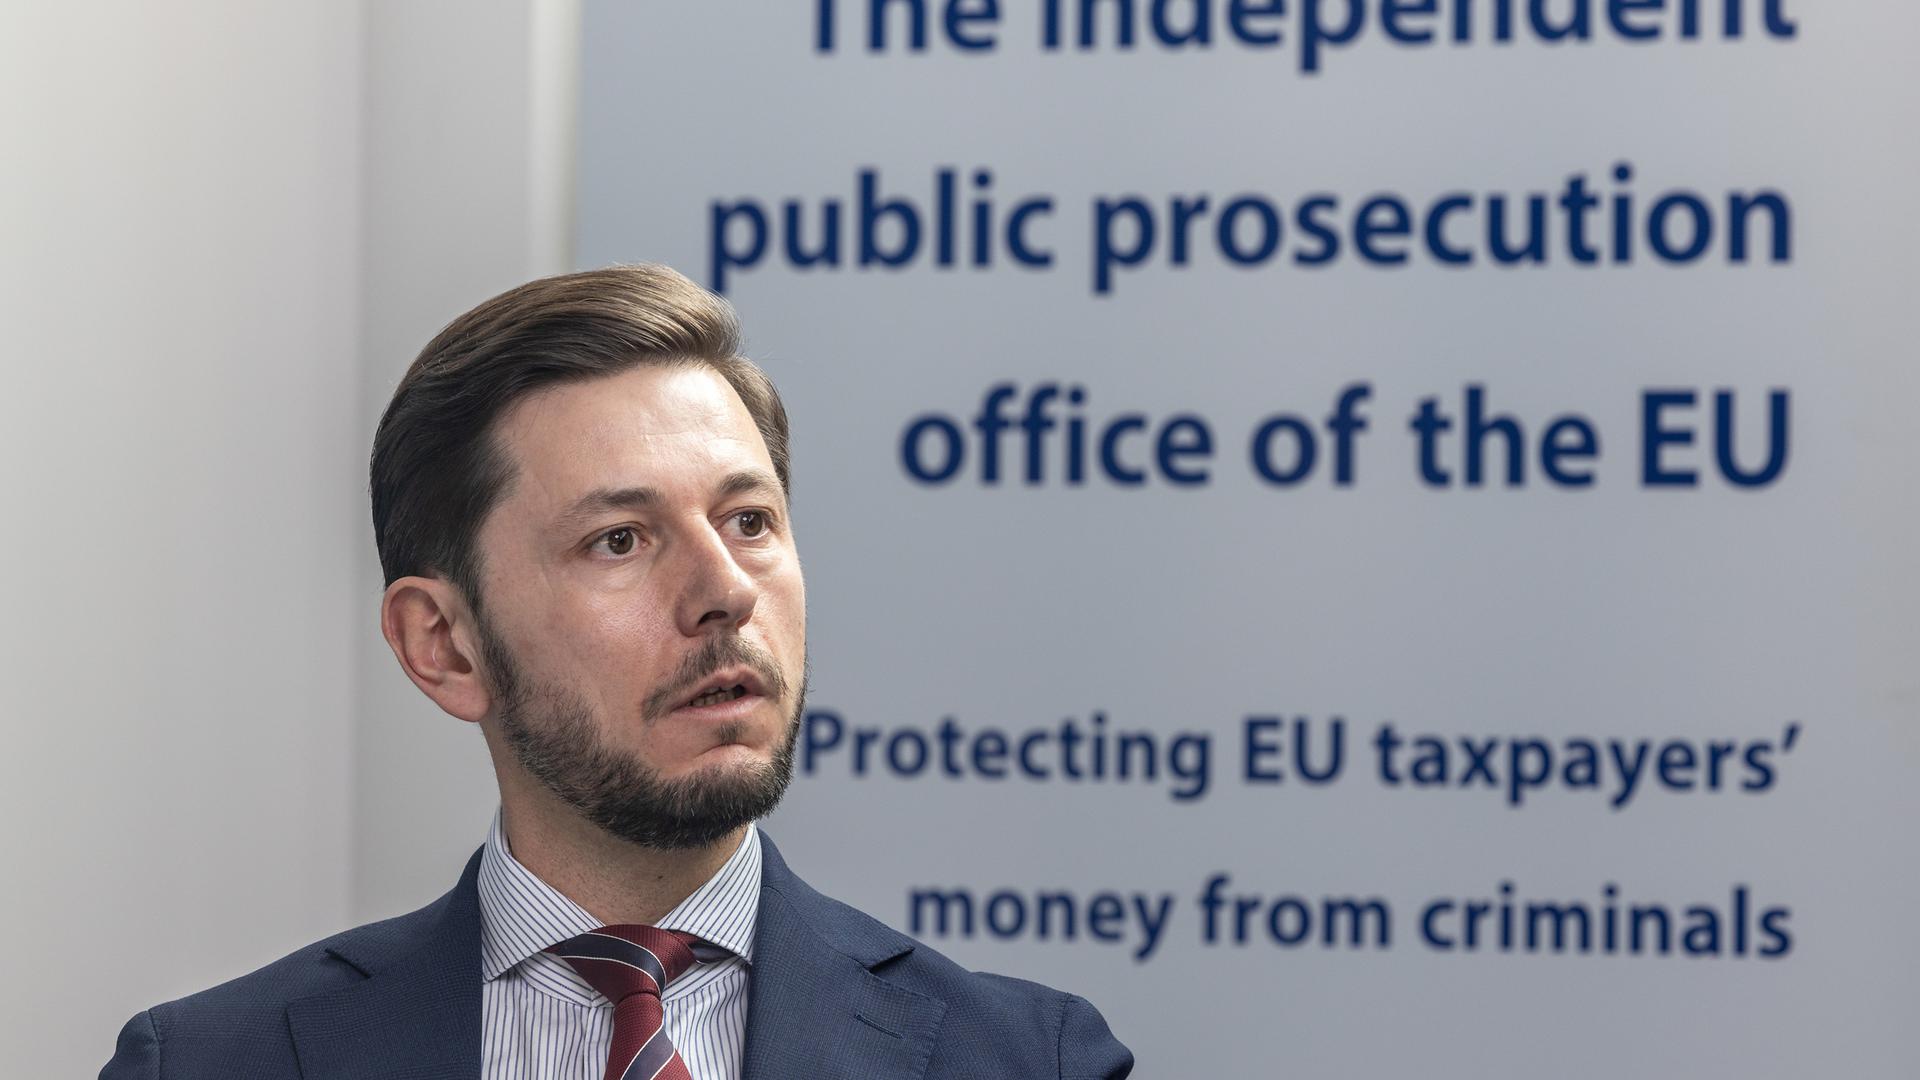 Pour Gabriel Seixas, procureur européen luxembourgeois, l'installation d'un parquet européen était une nécessité pour défendre les intérêts financiers de l'UE.